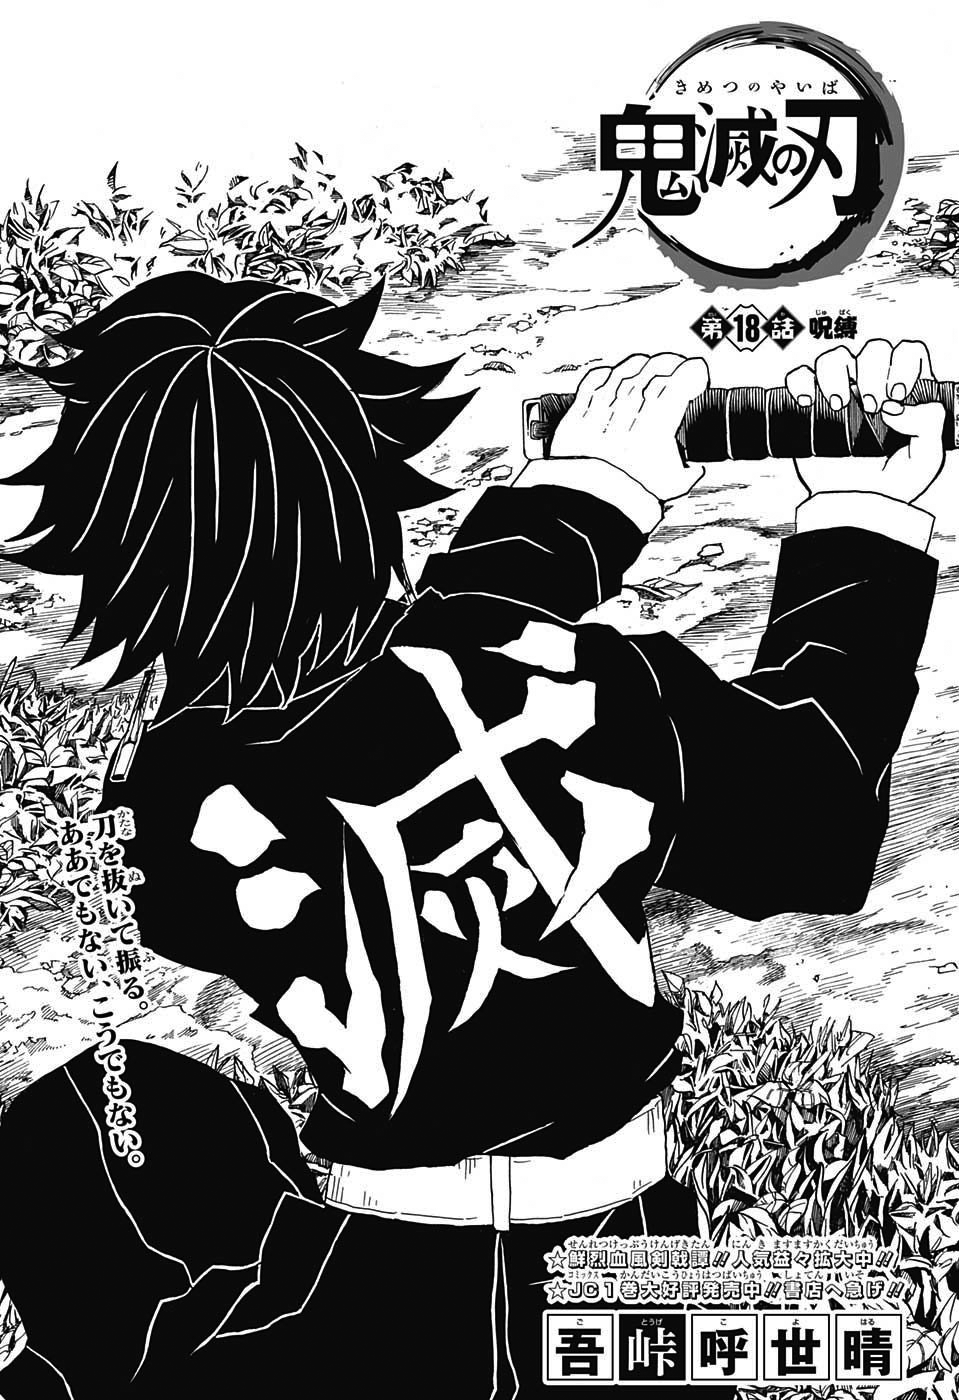 Demon Slayer - Kimetsu No Yaiba Vol. 18